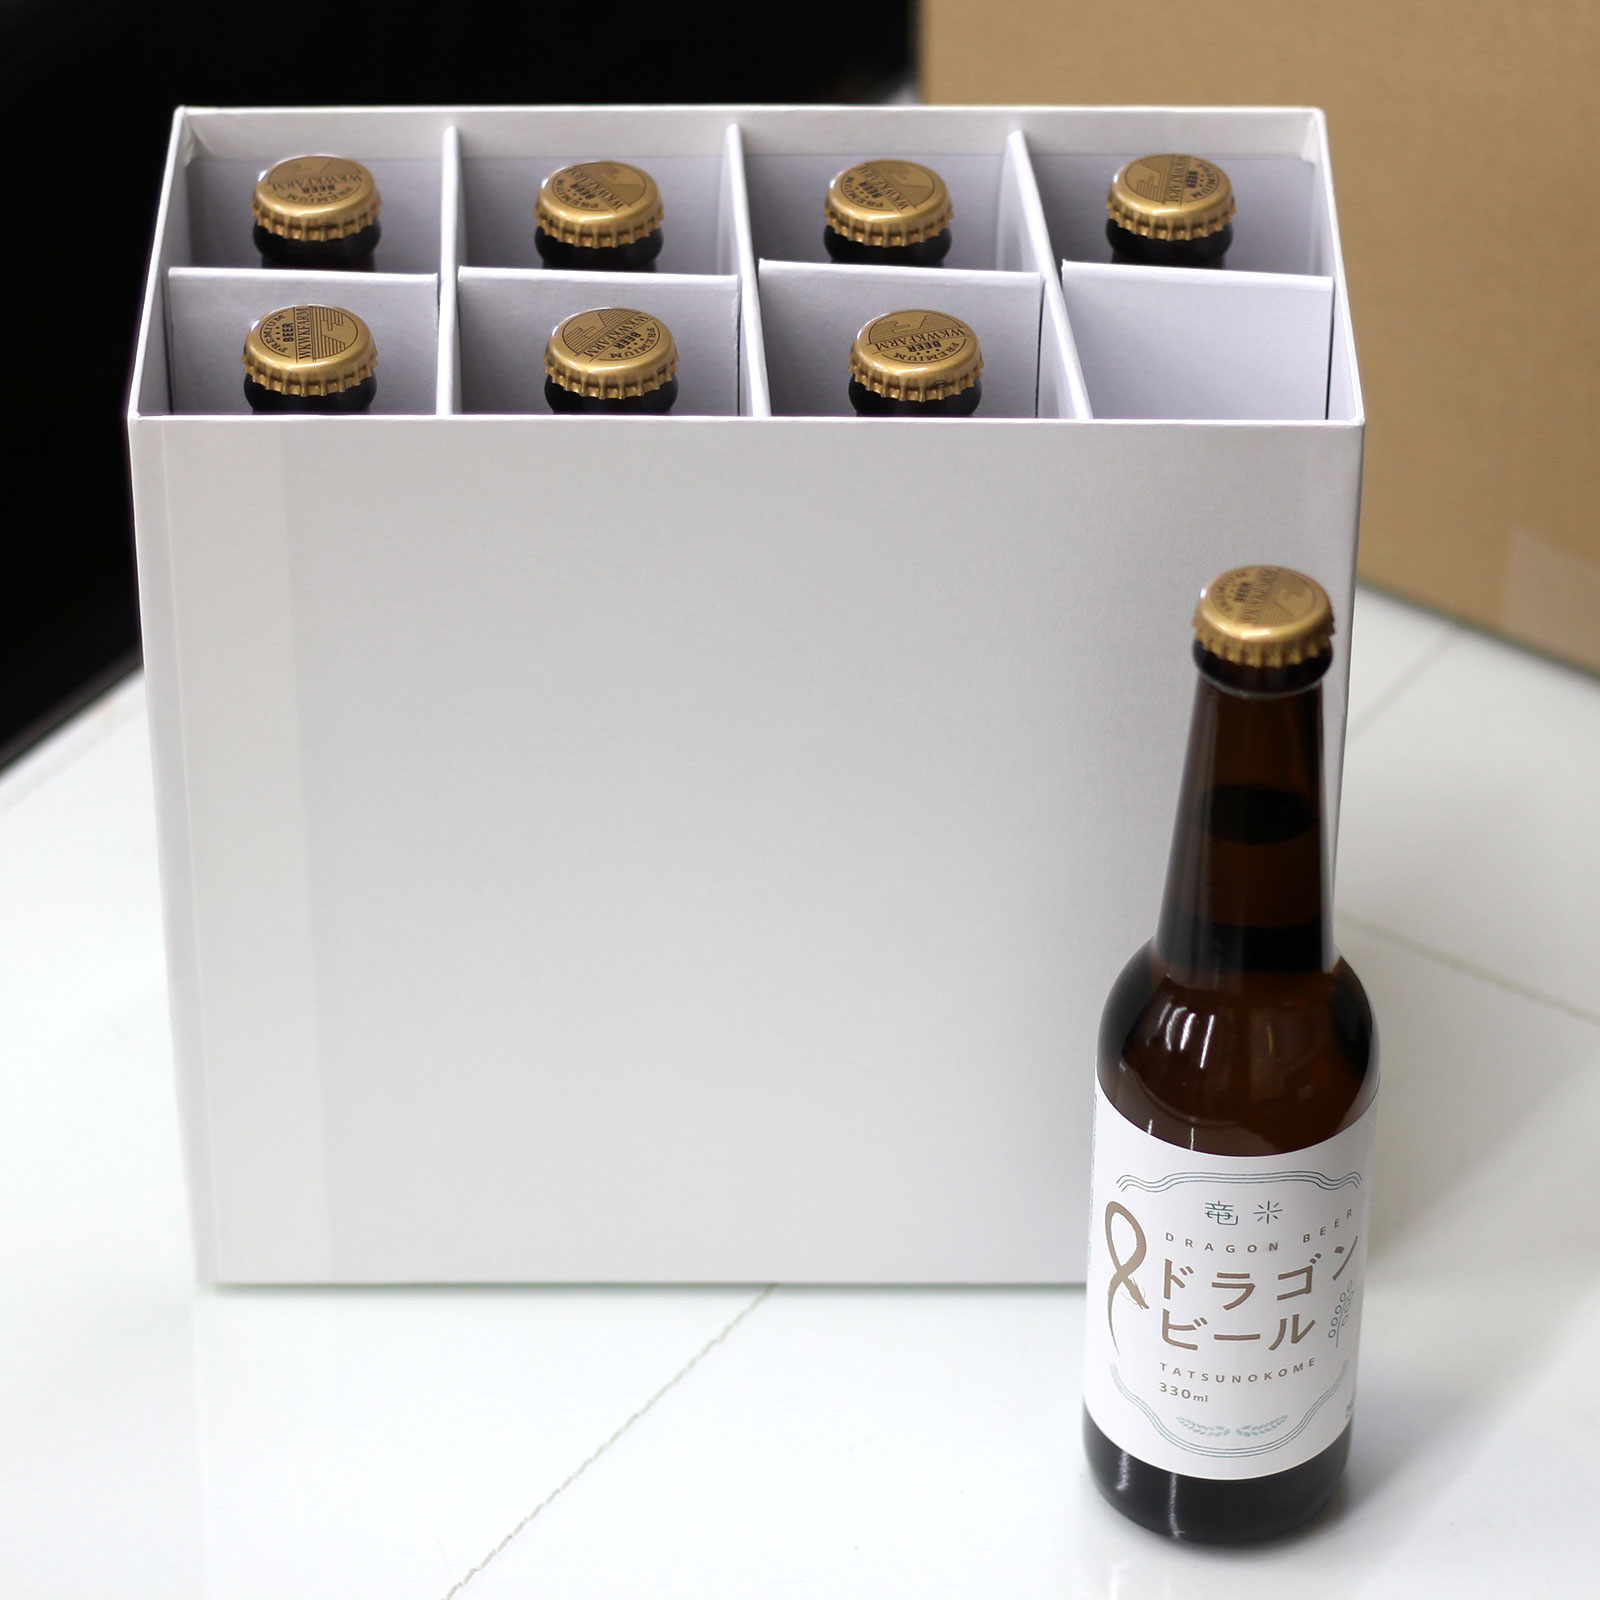 ドラゴンビール「8本箱入り」竜の米クラフトビール